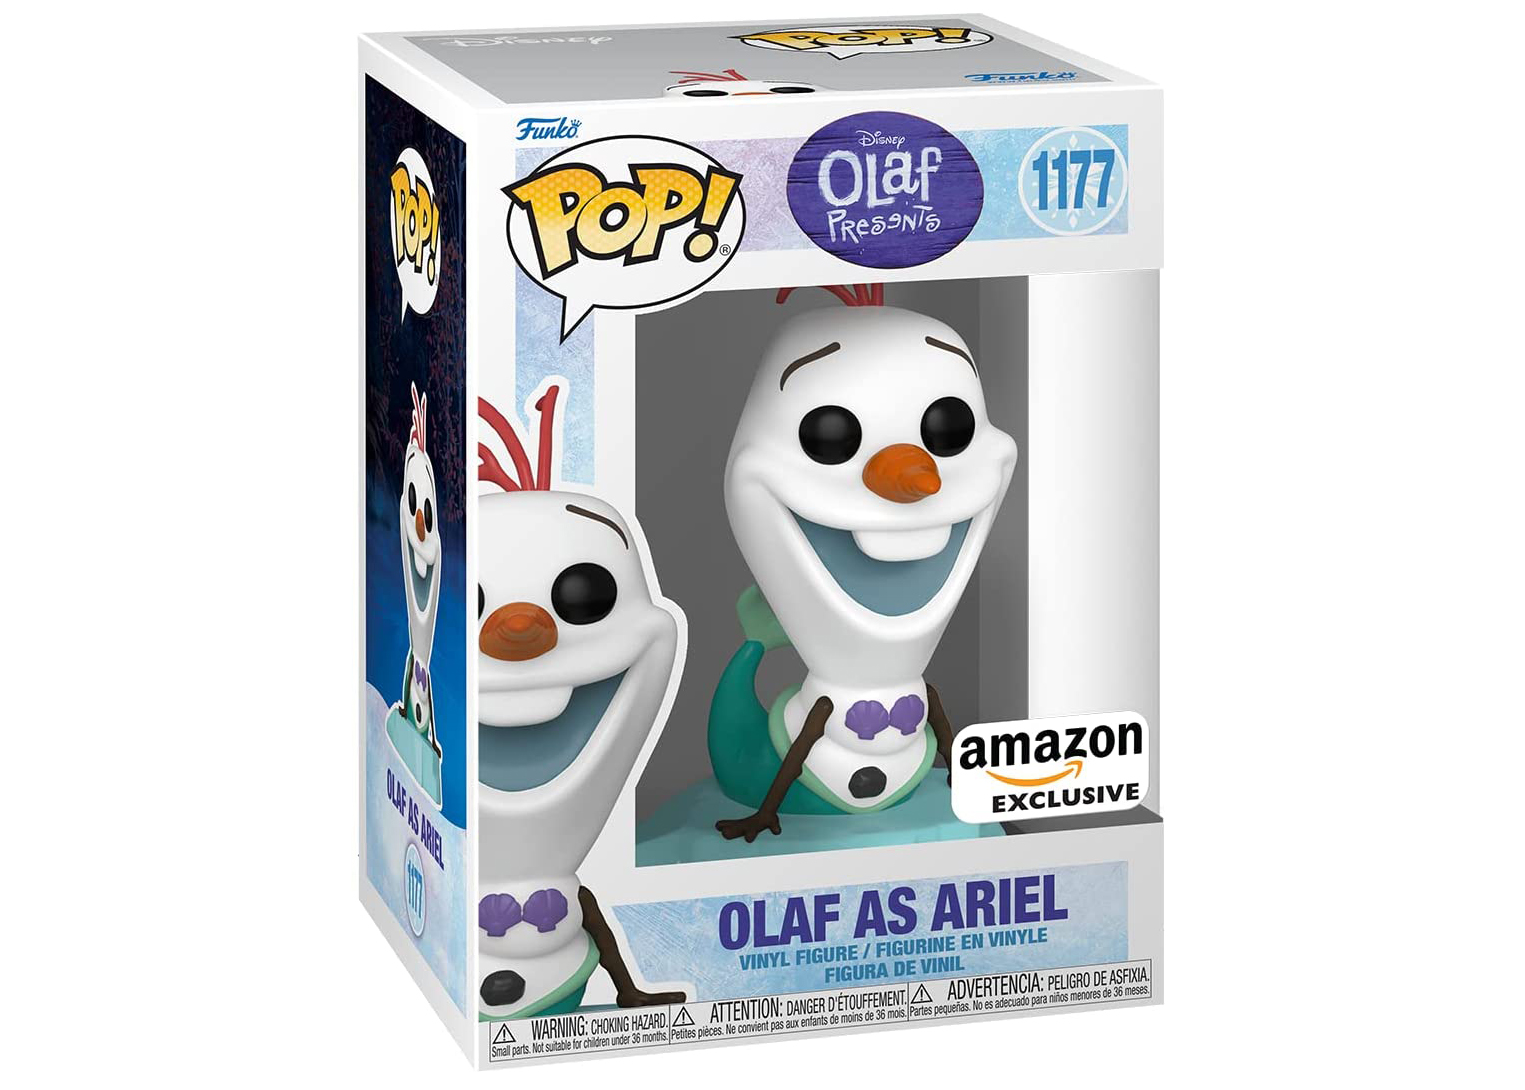 Funko Pop! Disney Olaf Presents: Olaf as Ariel Amazon Exclusive 